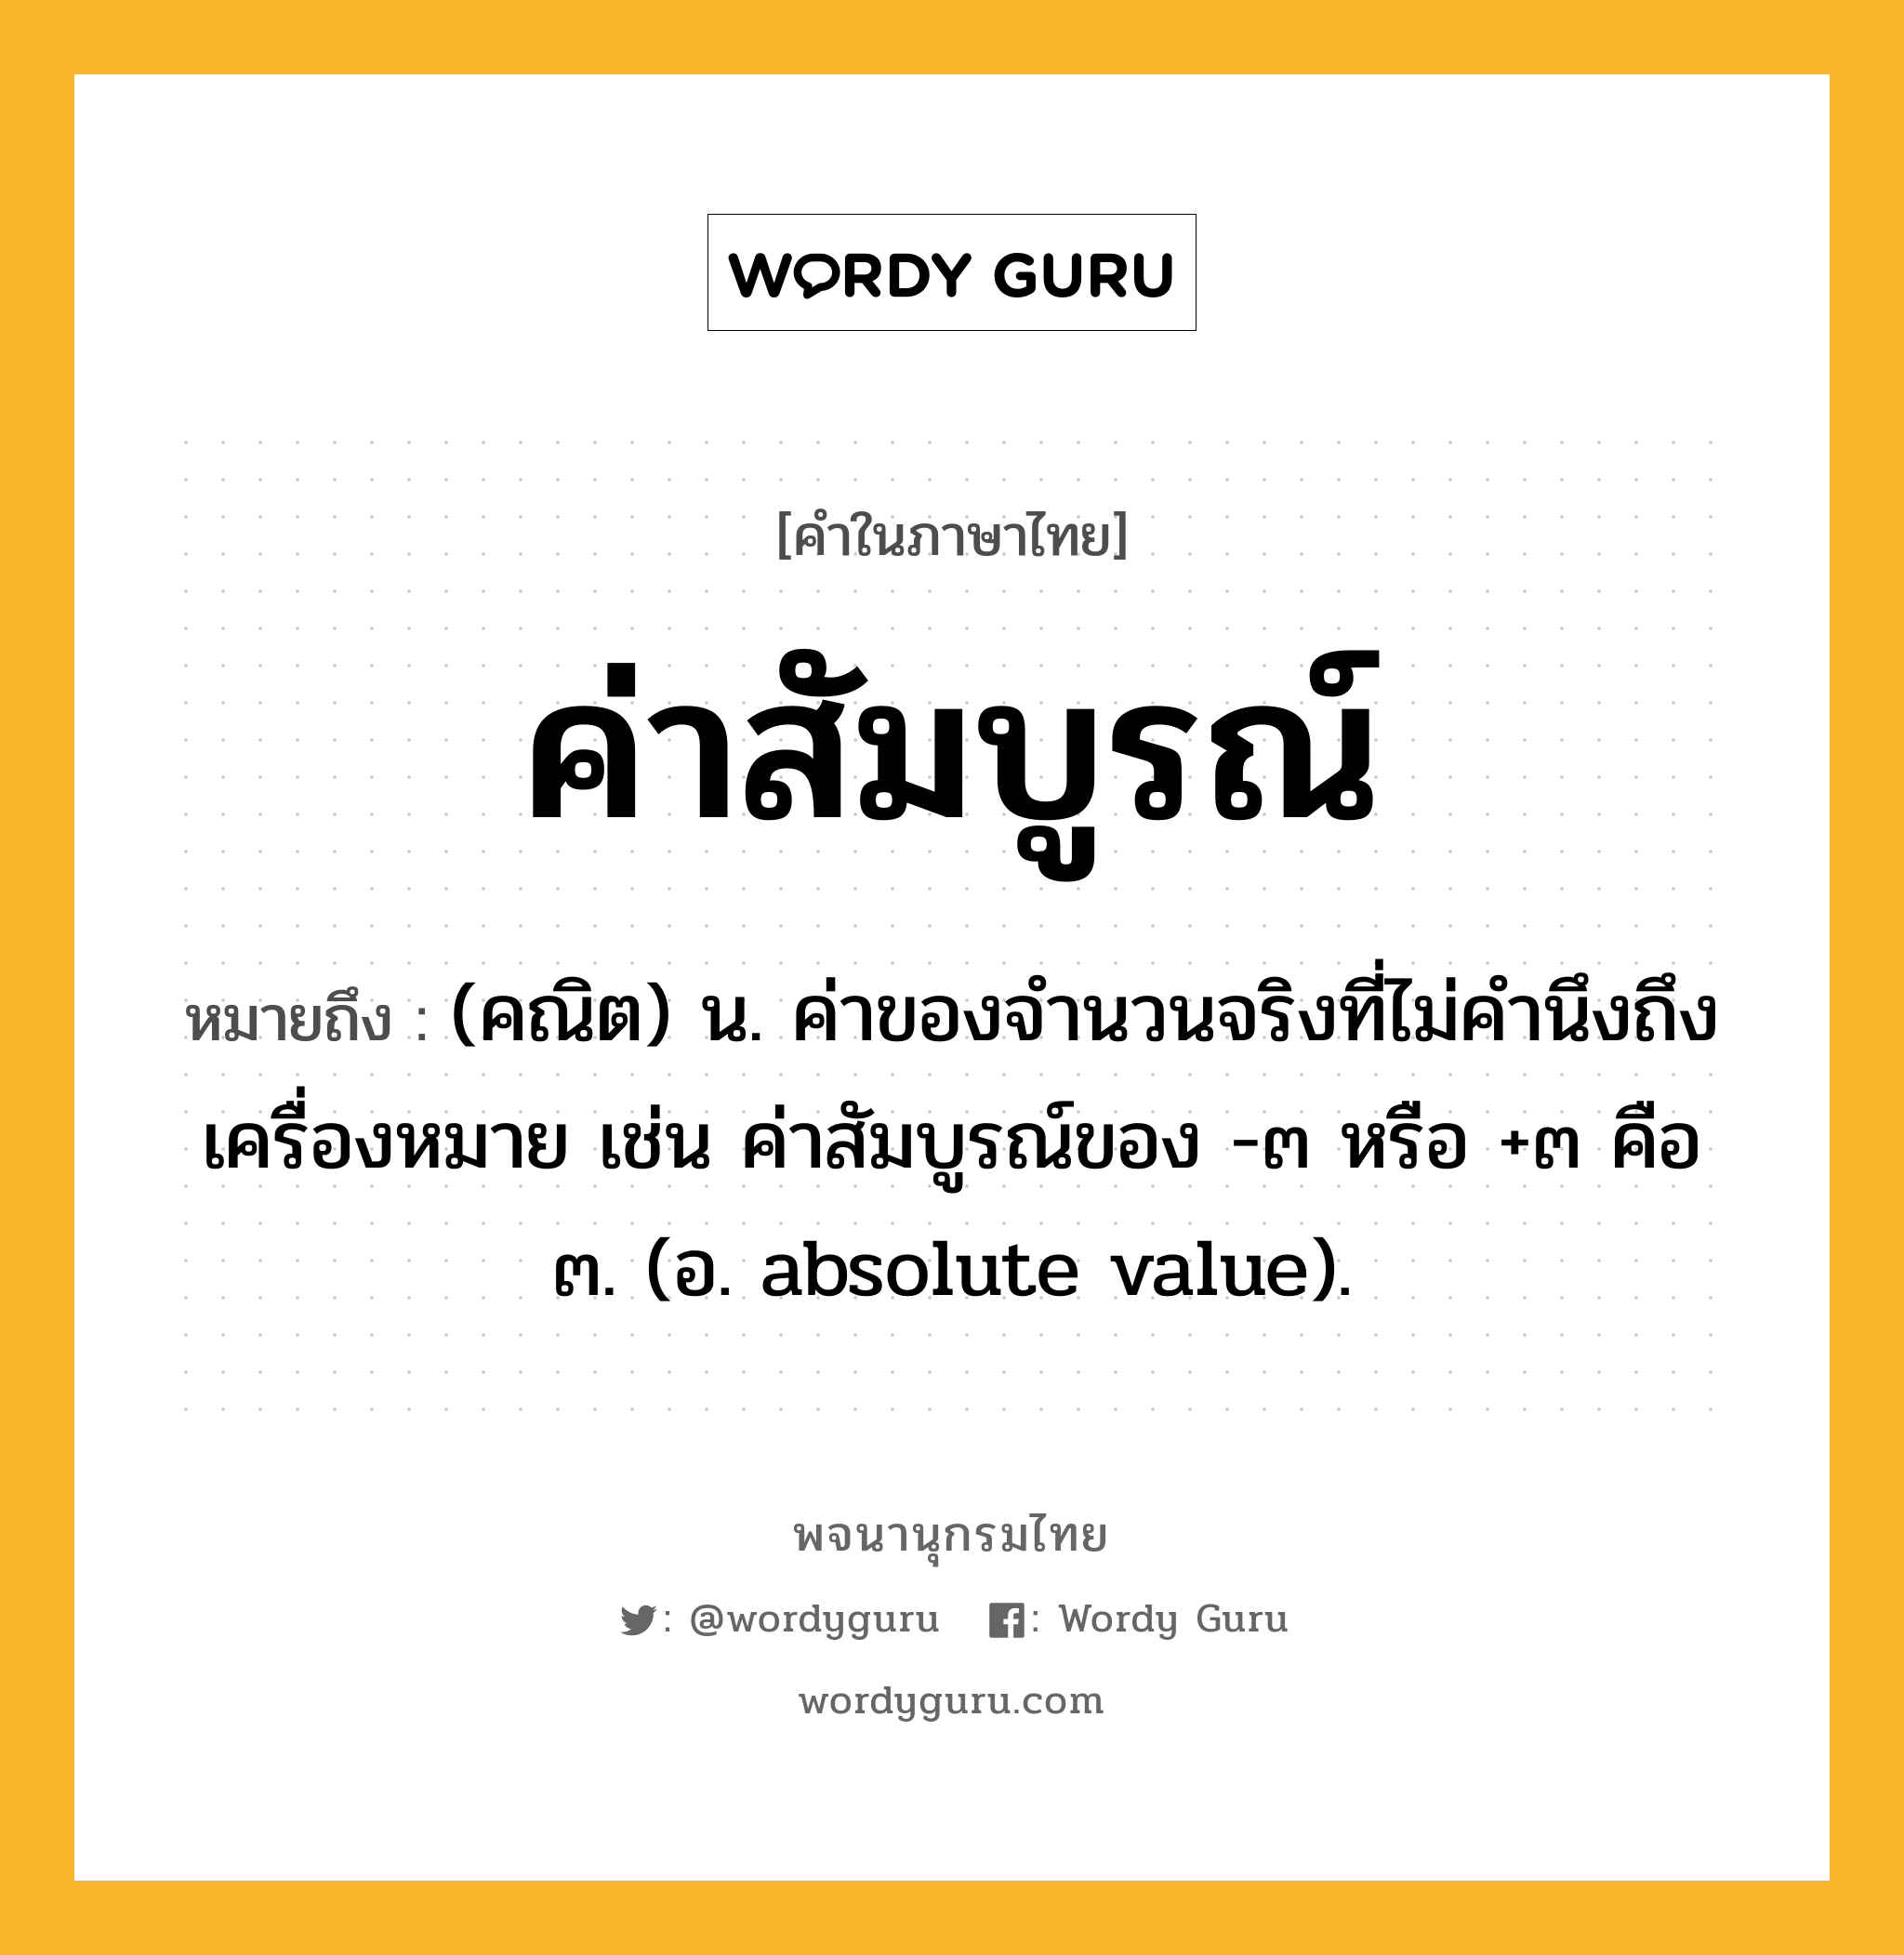 ค่าสัมบูรณ์ ความหมาย หมายถึงอะไร?, คำในภาษาไทย ค่าสัมบูรณ์ หมายถึง (คณิต) น. ค่าของจํานวนจริงที่ไม่คำนึงถึงเครื่องหมาย เช่น ค่าสัมบูรณ์ของ -๓ หรือ +๓ คือ ๓. (อ. absolute value).